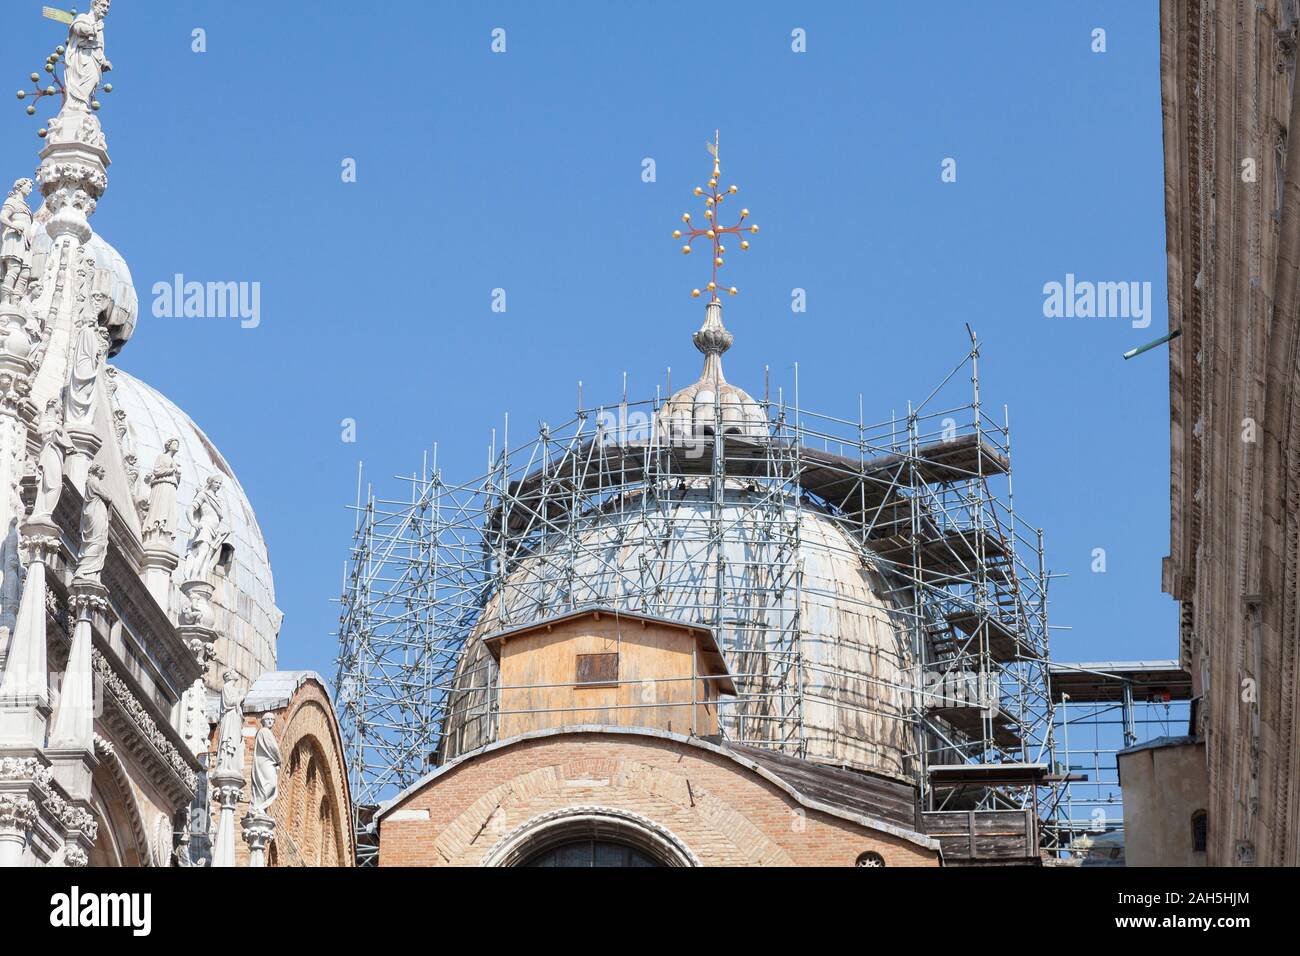 La cúpula de la Catedral de San Marcos (Basílica de San Marcos) realizando tareas de mantenimiento y reparaciones de andamios, Piazza San Marco, Venecia, Véneto, Italia Foto de stock